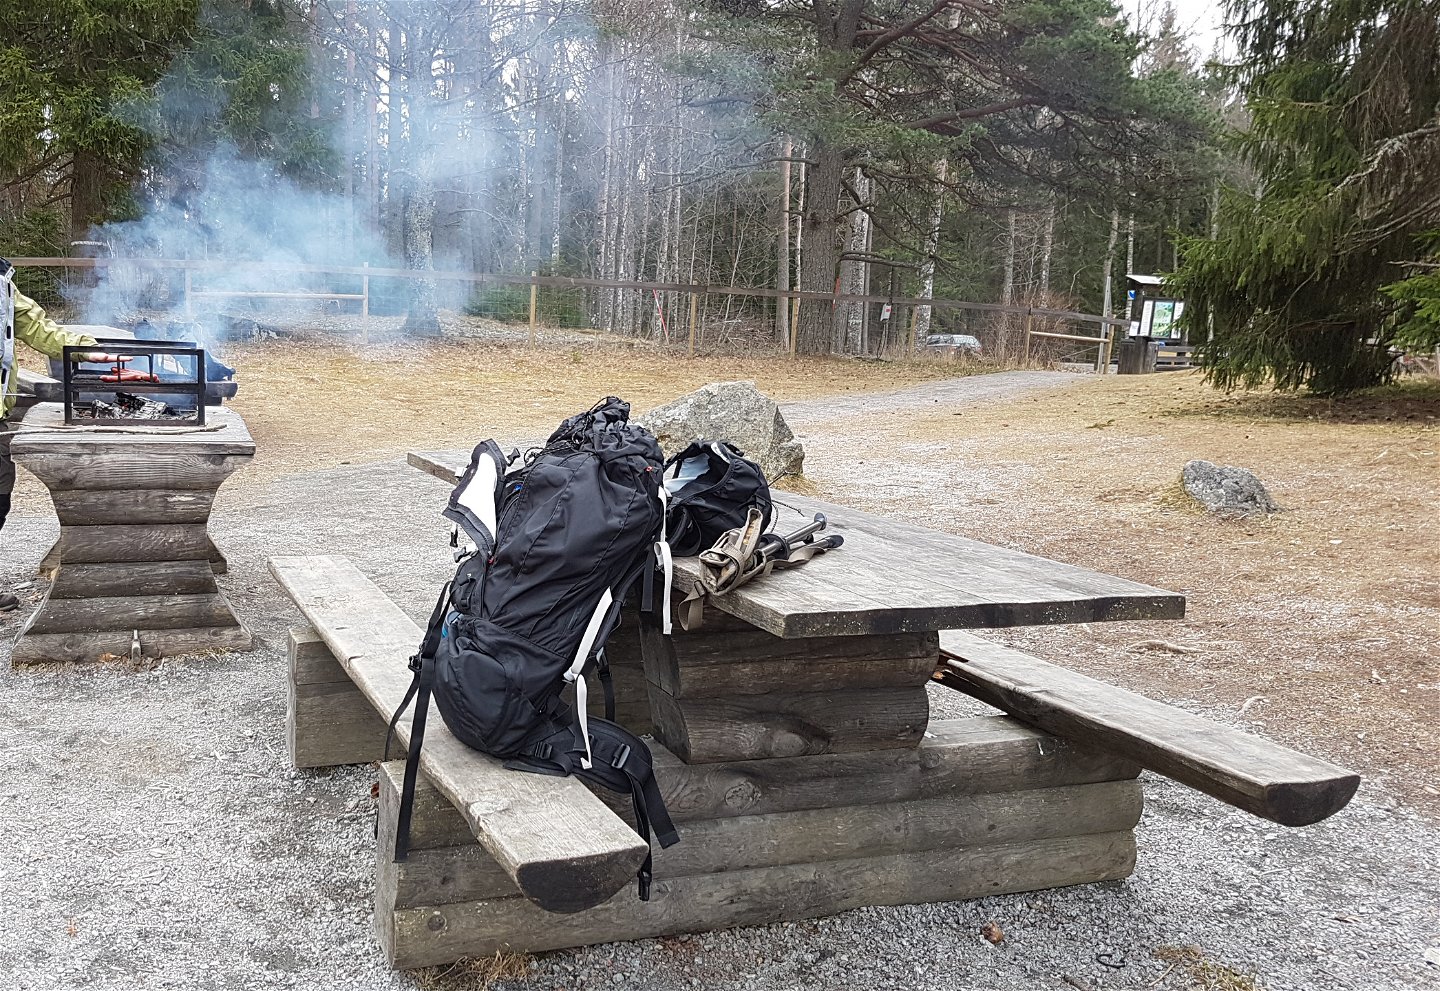 En ryggsäck ligger på ett bänkbord i skogen. I bakgrunden står en person vid ett grillbord och grillar.